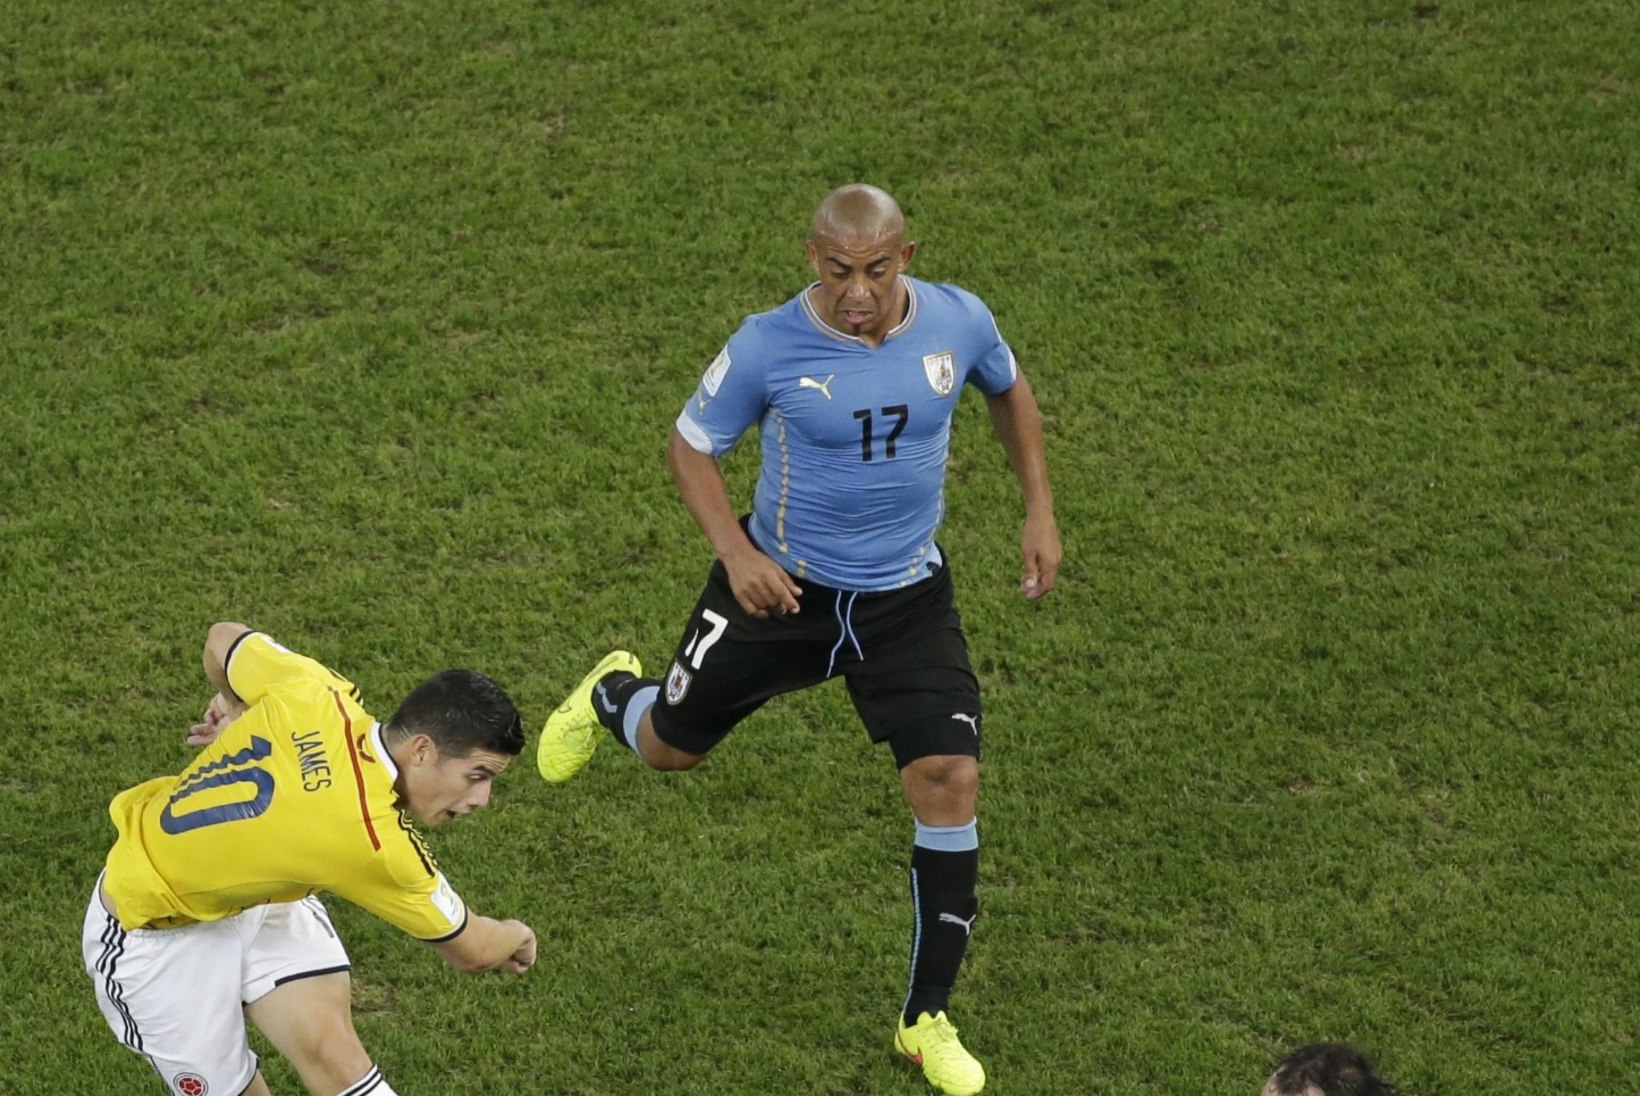 GALERII: Suarezeta mänginud Uruguai Kolumbiale vastu ei saanud